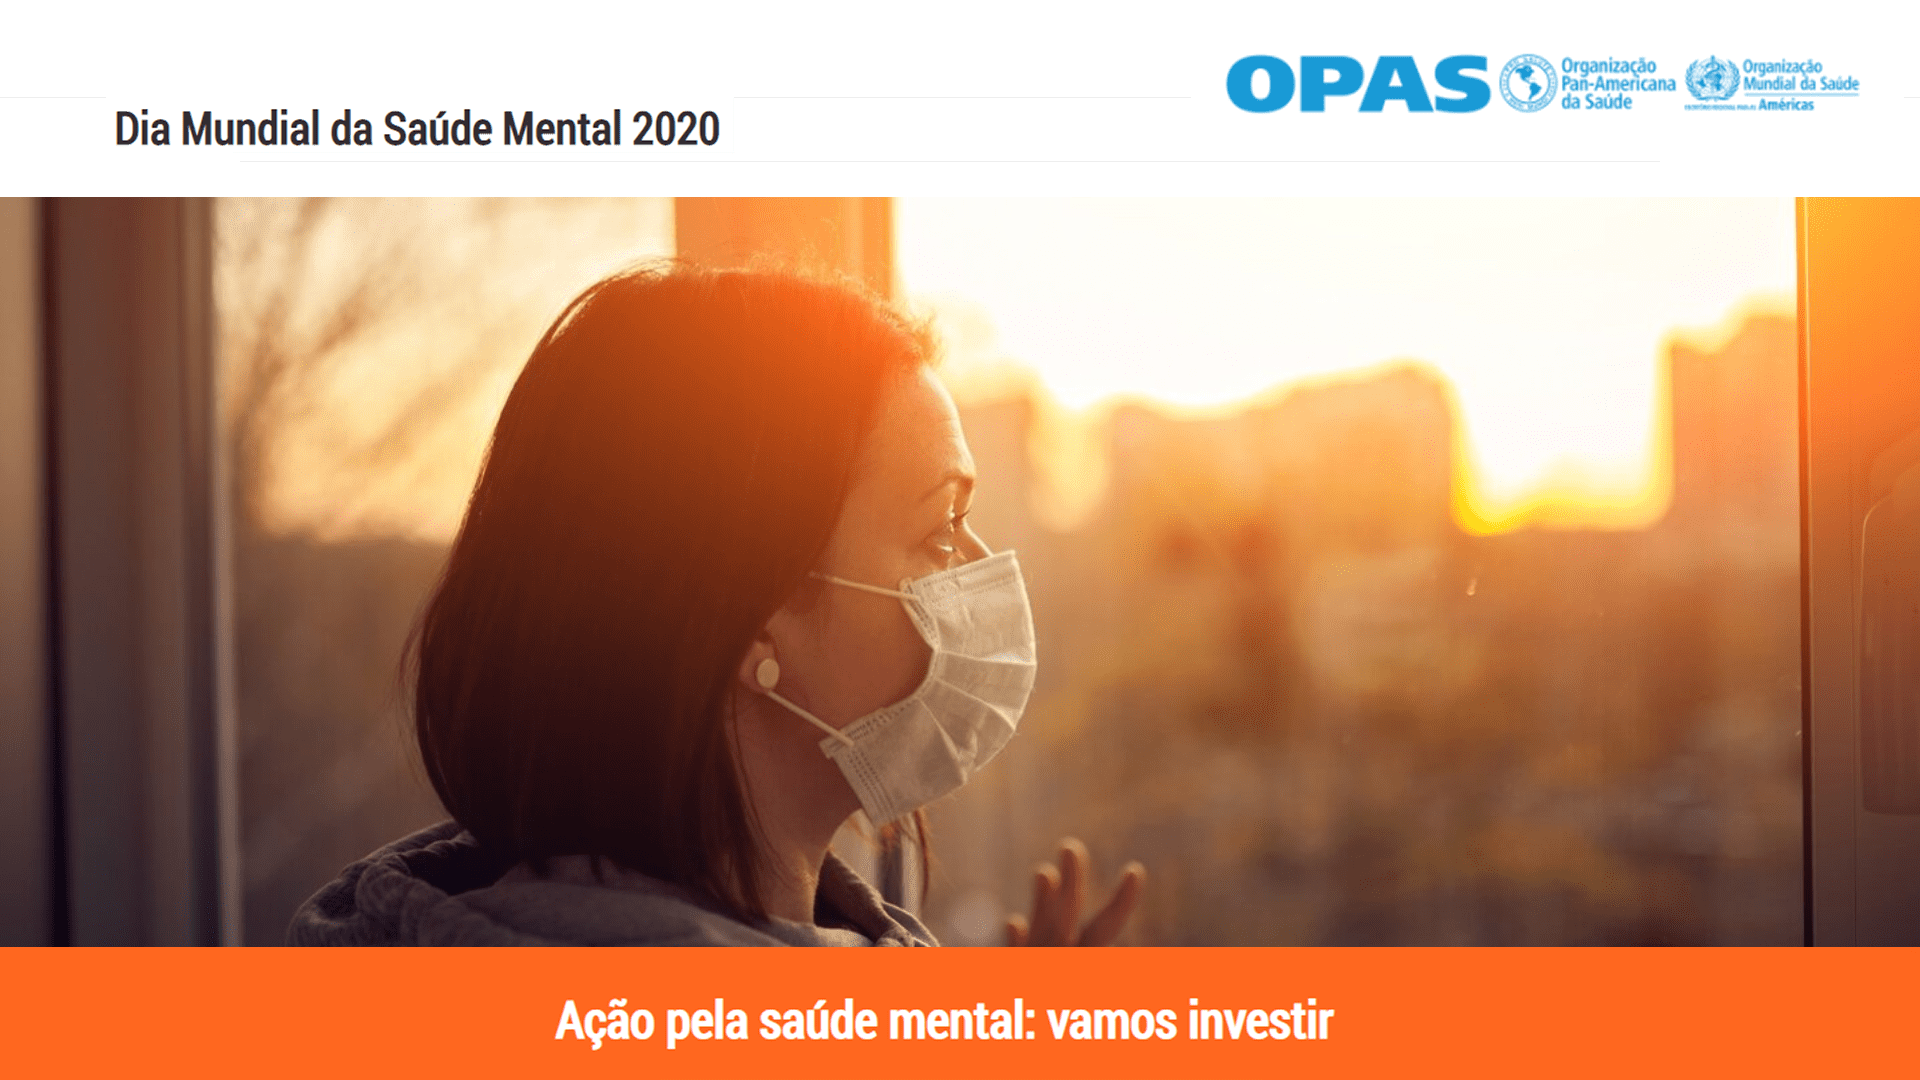 Organização Pan-Americana da Saúde (OPAS) - Dia Mundial da Saúde Mental 2020